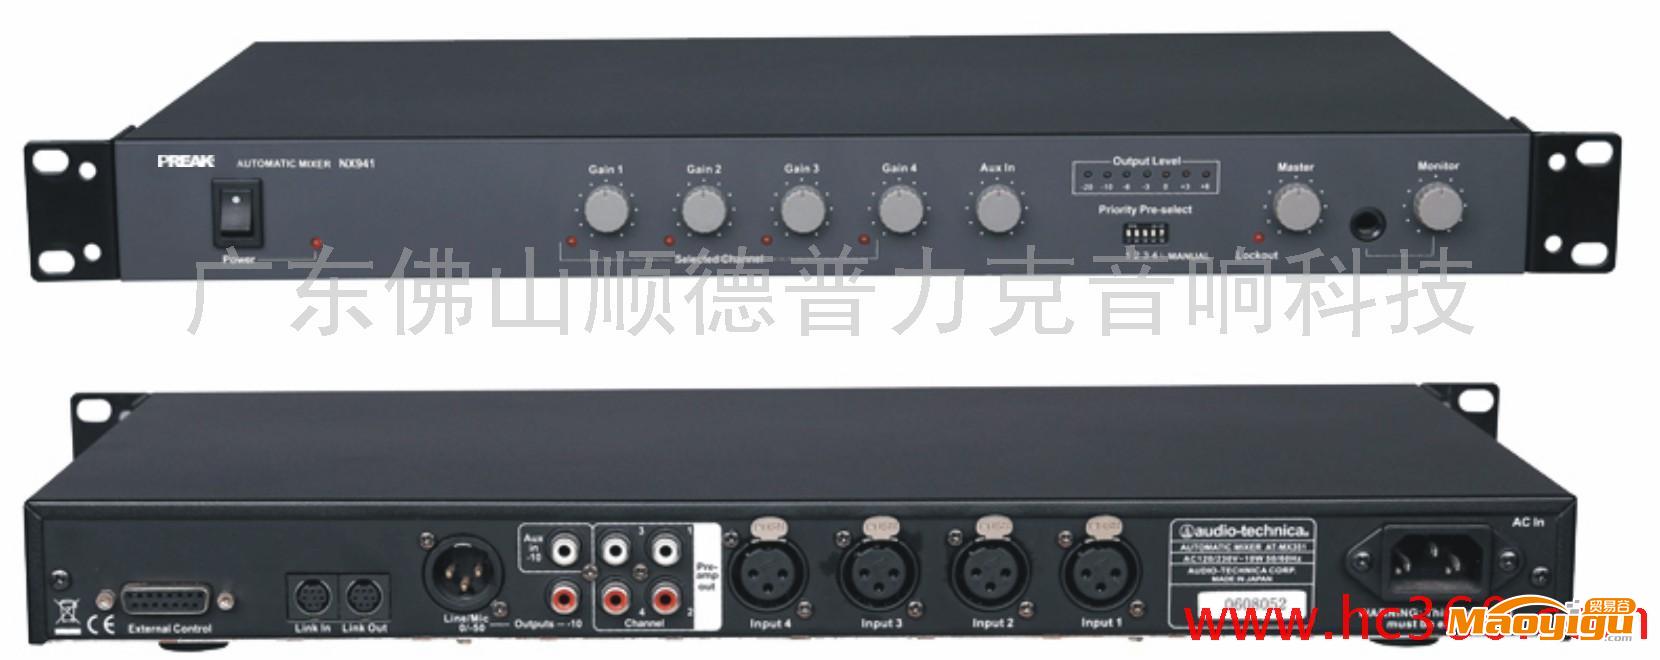 供应PREAK  MX-941智能混音器